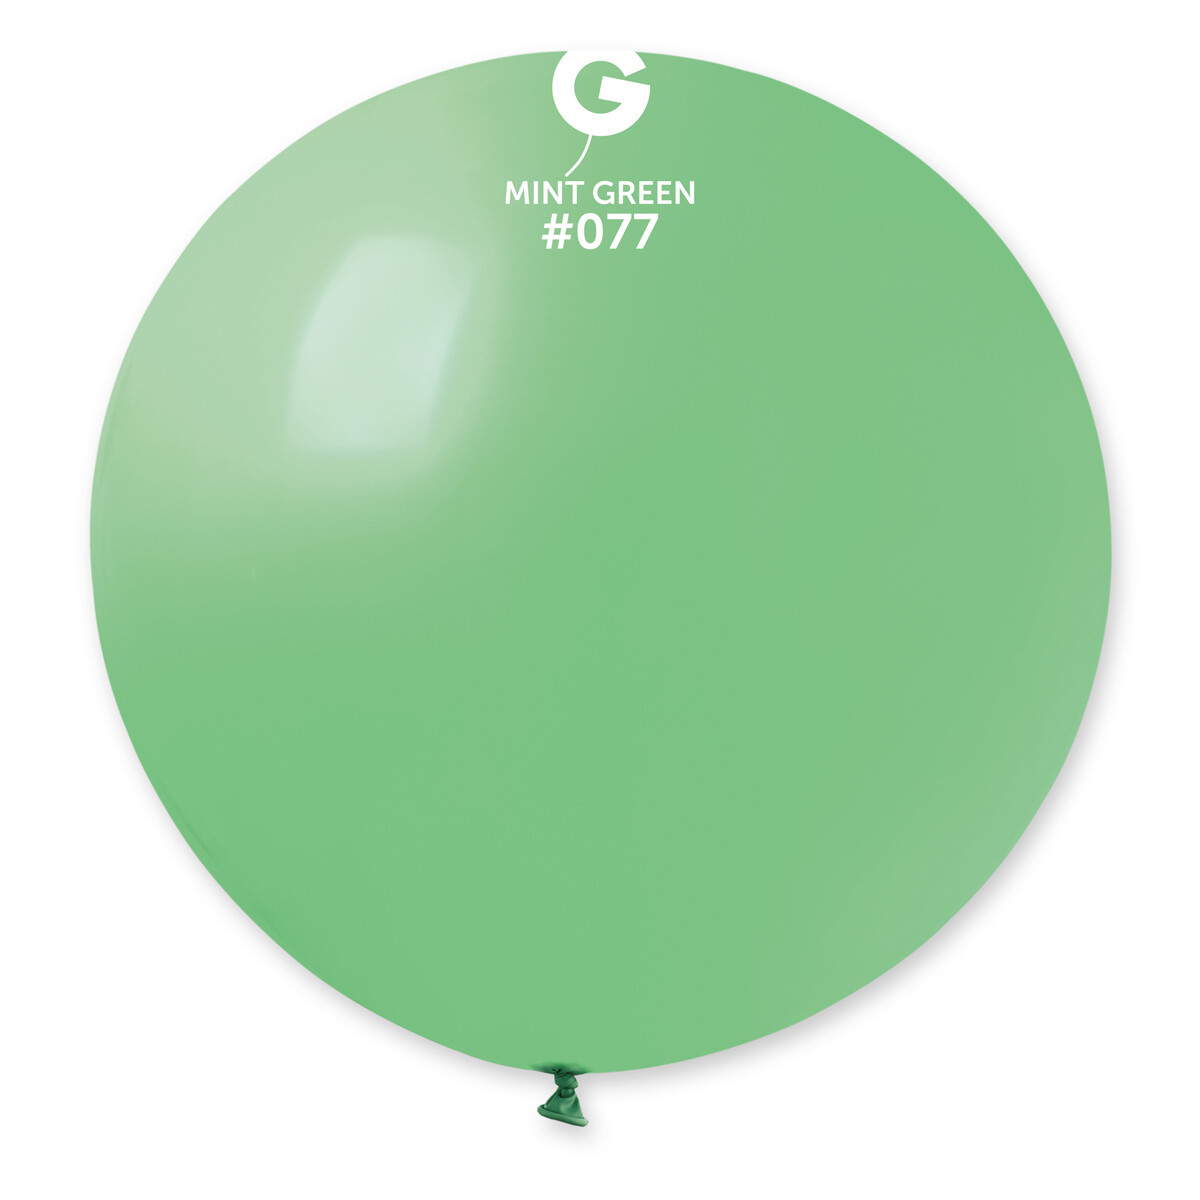 Standard Mint Green #077 31in - 1 piece